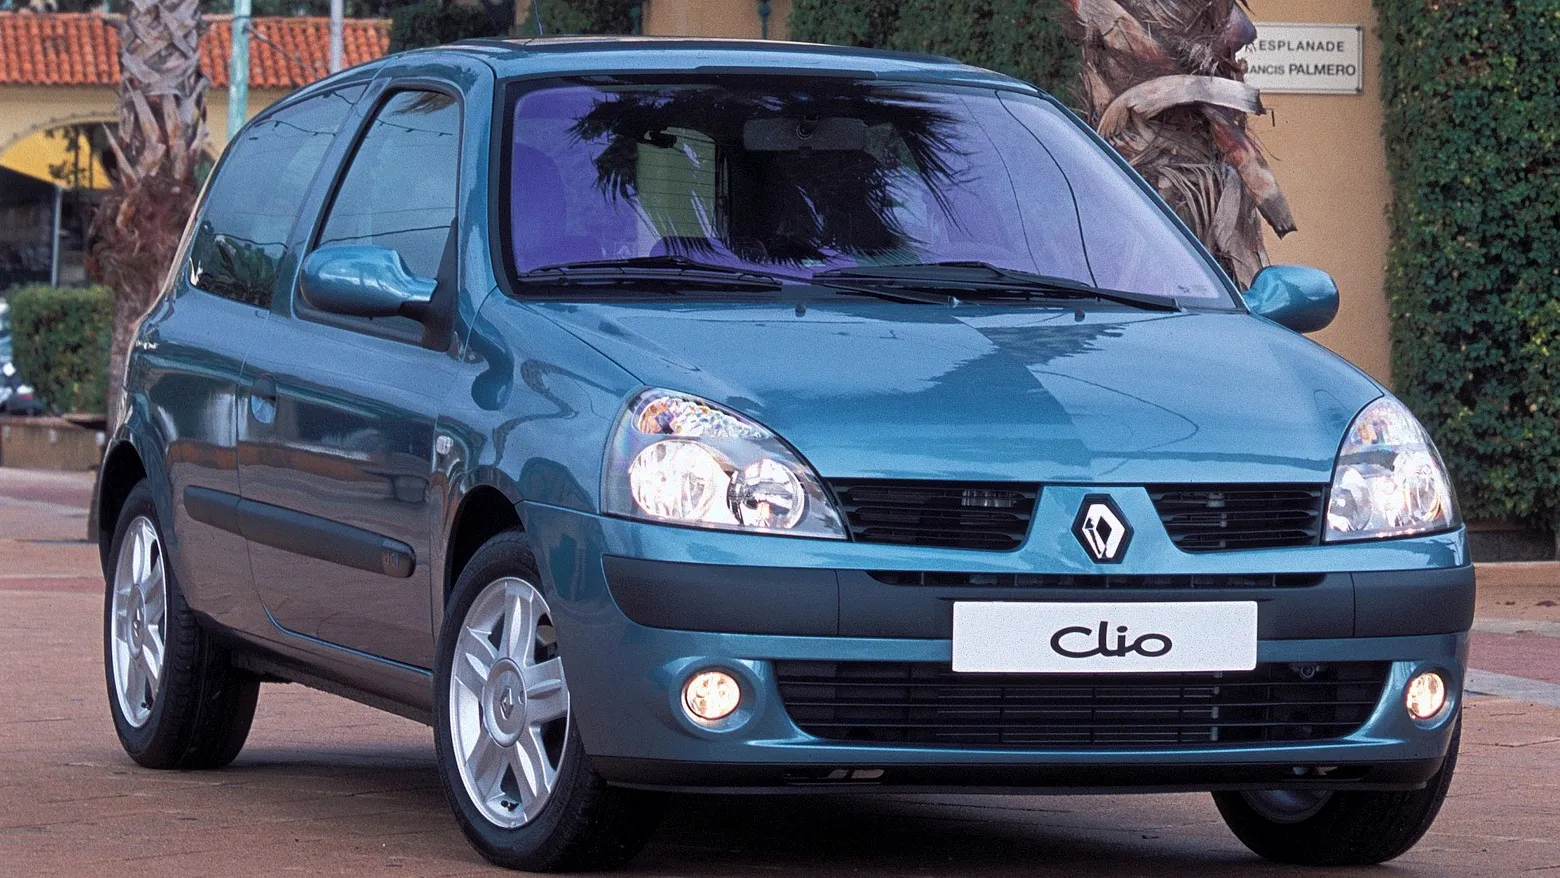 Coche del día: Renault Clio 1.5 dCi 100 CV